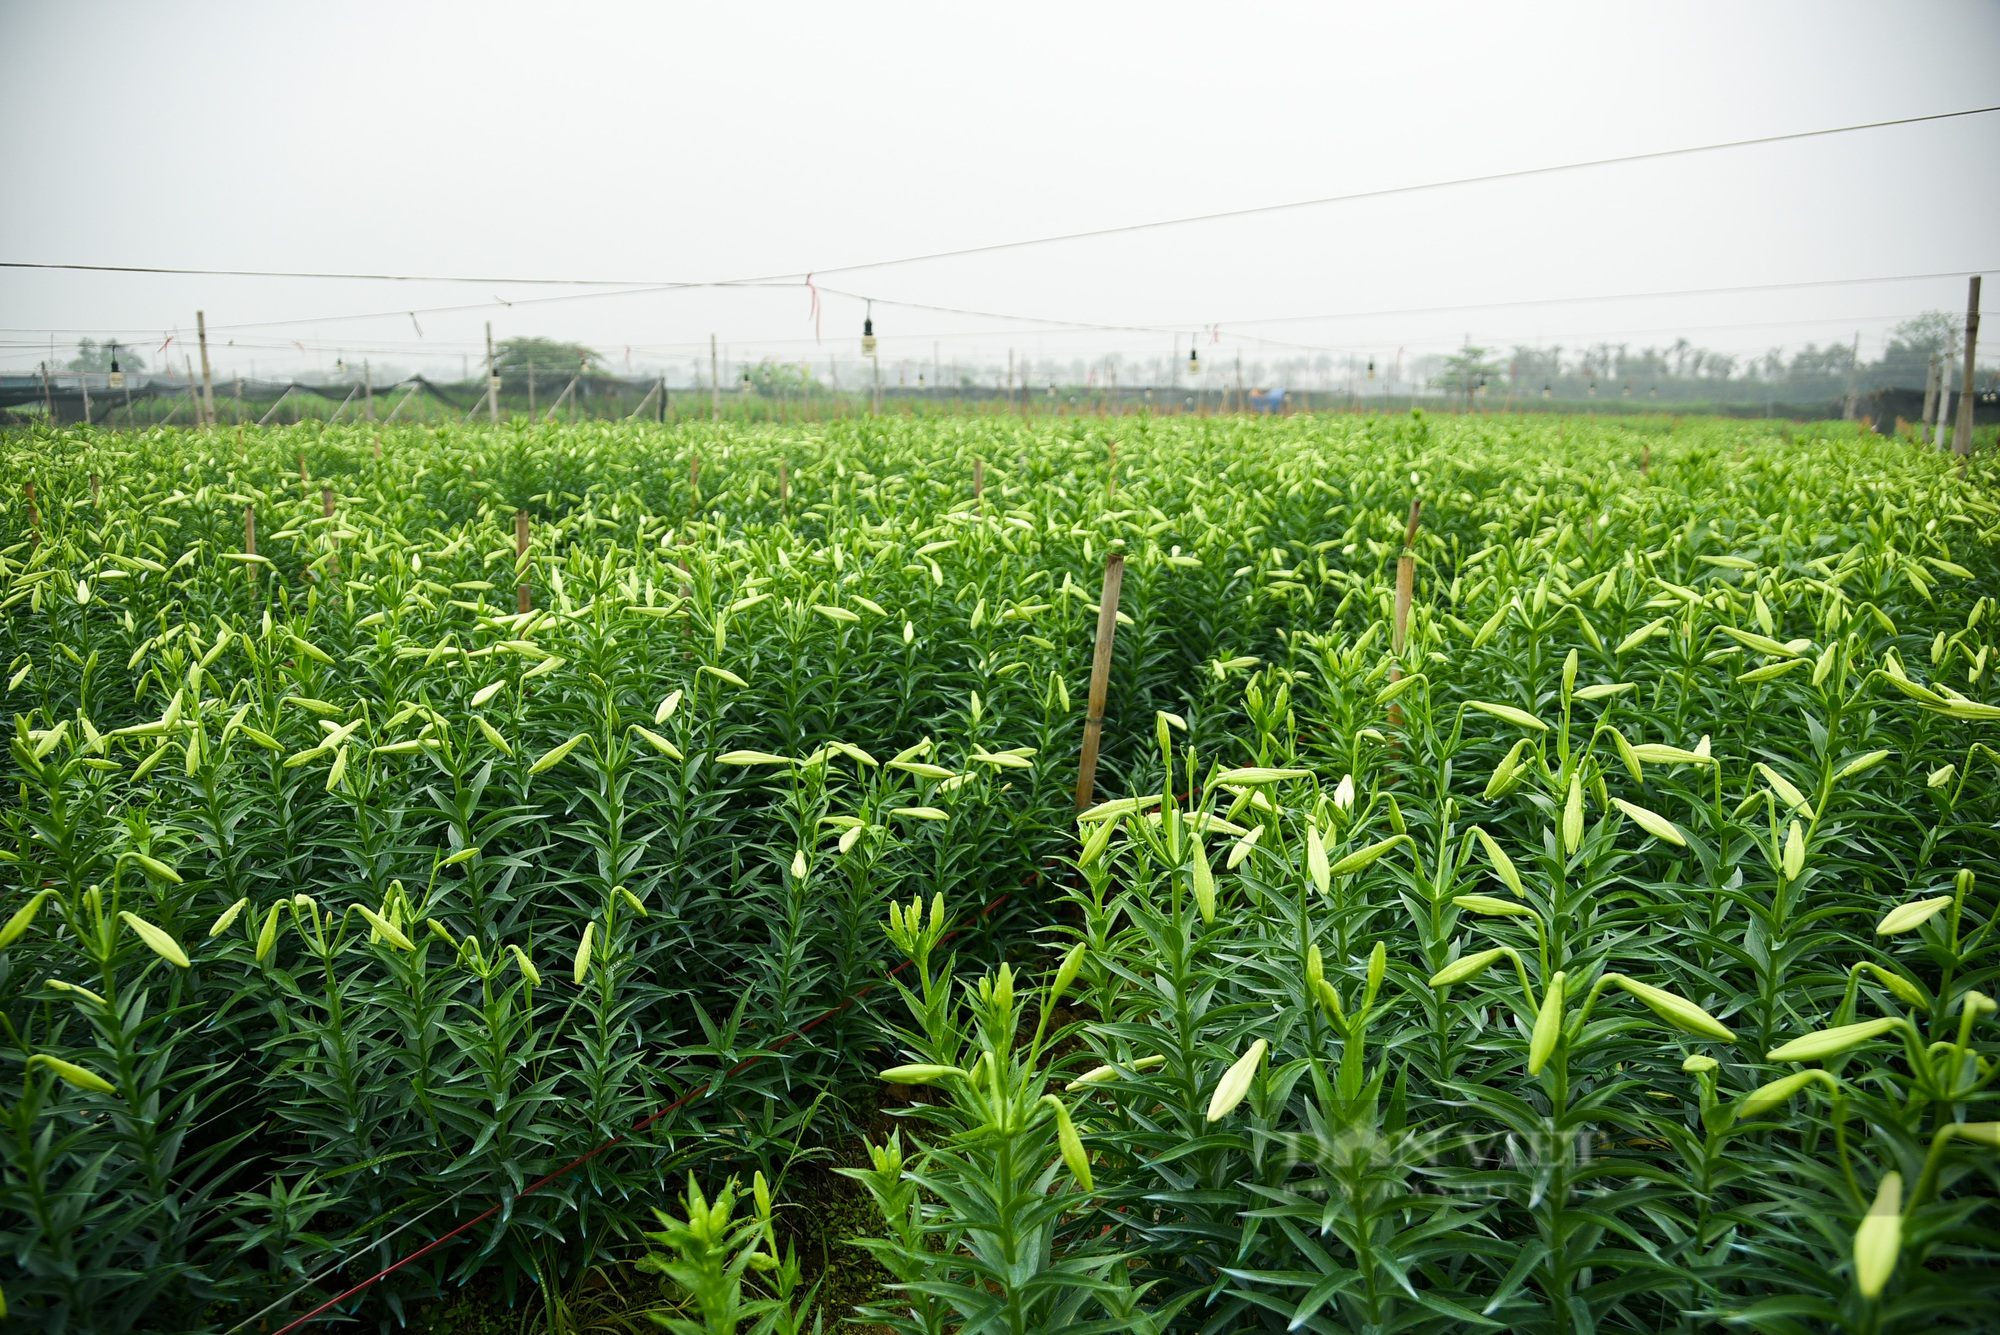 Hoa loa kèn bung nở, nông dân Hà Nội thu hàng chục triệu mỗi ngày - Ảnh 2.